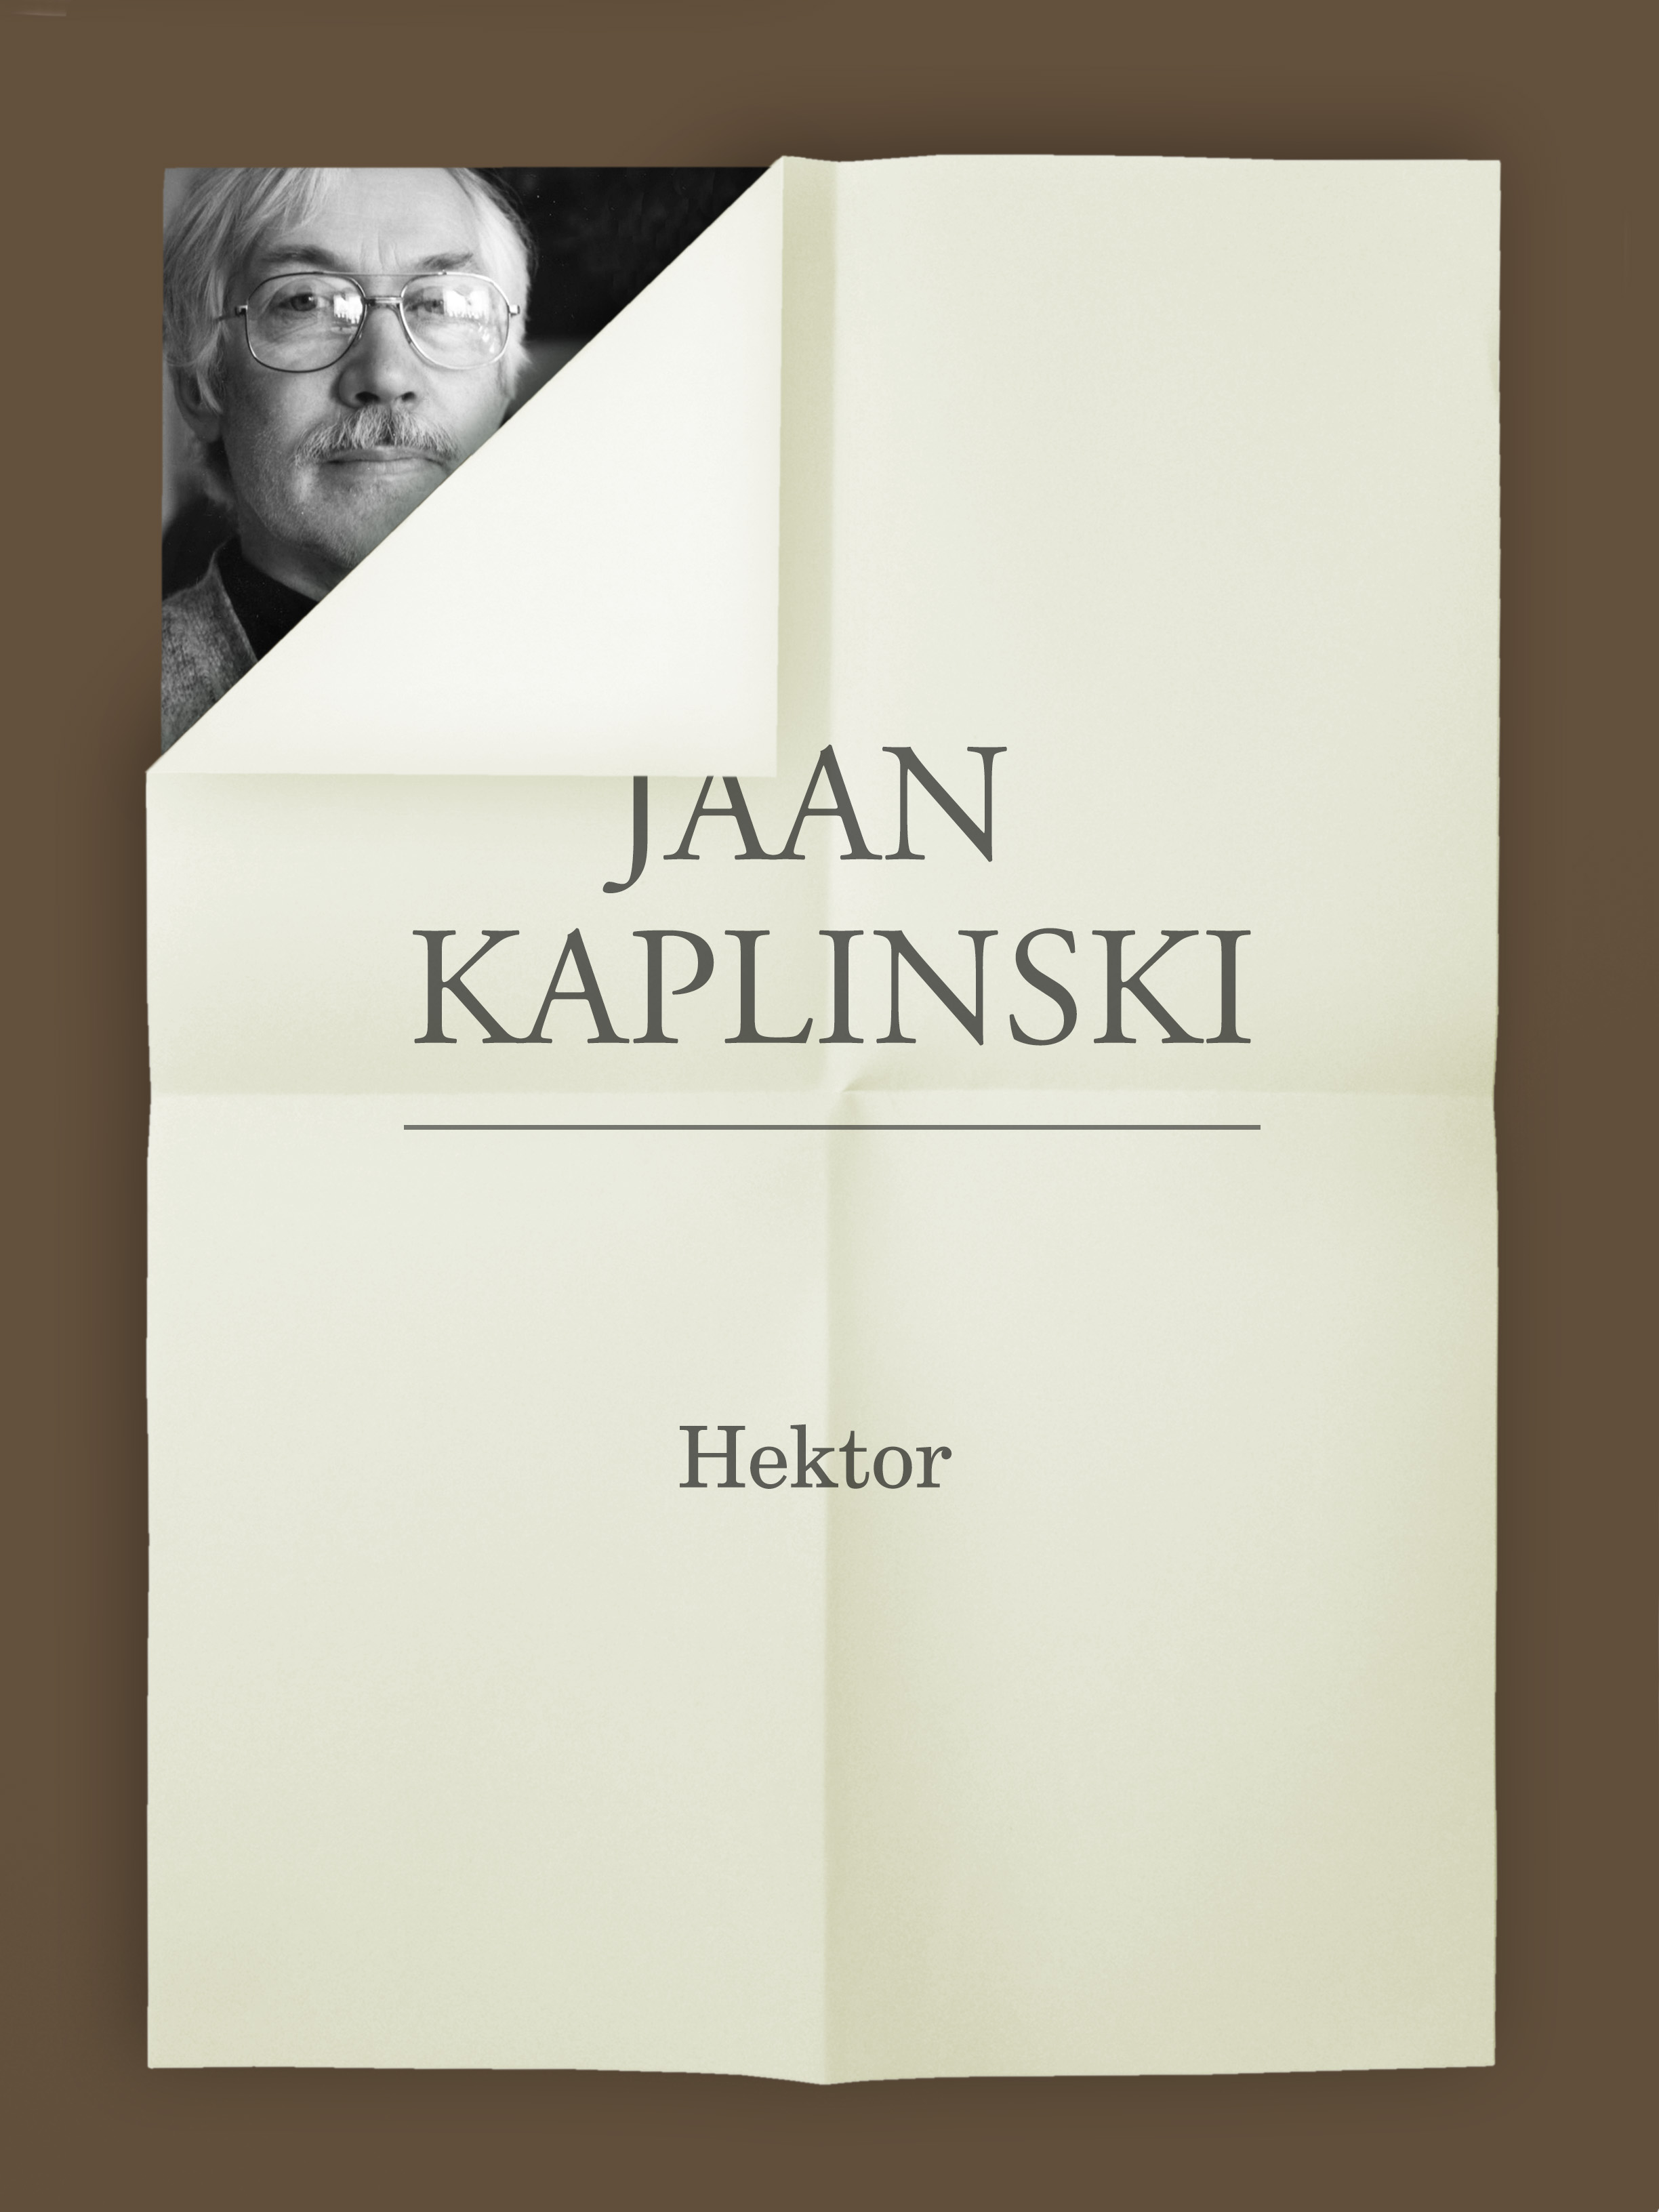 Книга Hektor из серии , созданная Jaan Kaplinski, может относится к жанру Литература 20 века, Философия, Зарубежная классика. Стоимость электронной книги Hektor с идентификатором 21184780 составляет 255.50 руб.